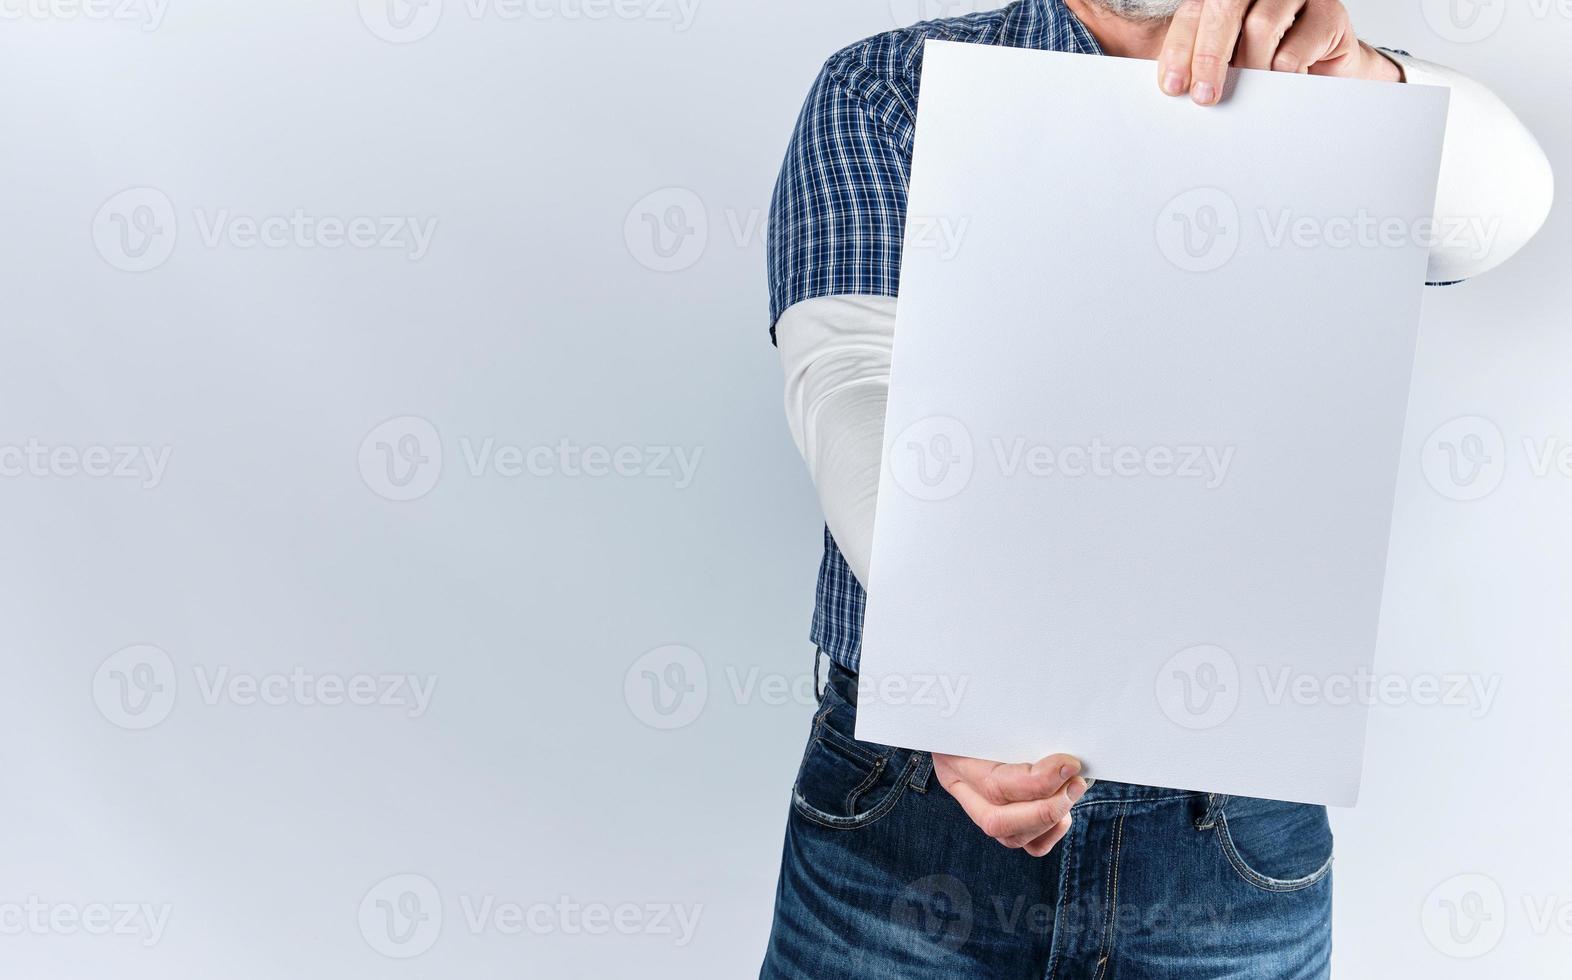 homem em uma camisa xadrez azul e jeans está segurando uma folha de papel branco retangular em branco foto